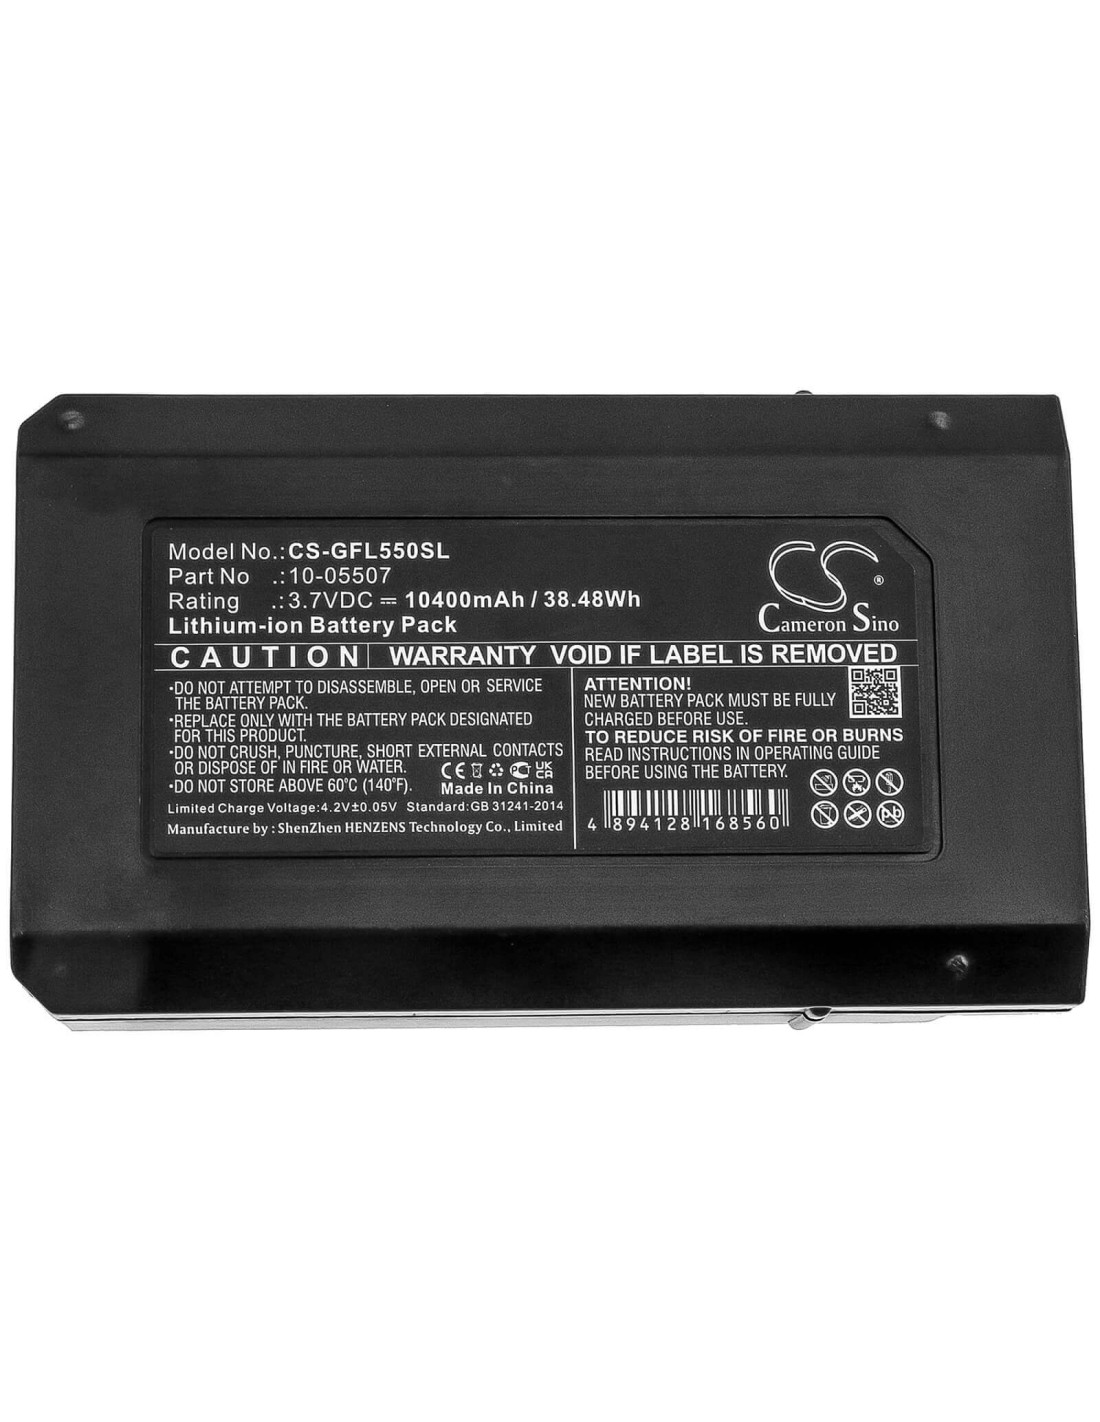 Battery for Geo-fennel, Fl 500, Fl 550, Flg 500 3.7V, 10400mAh - 38.48Wh